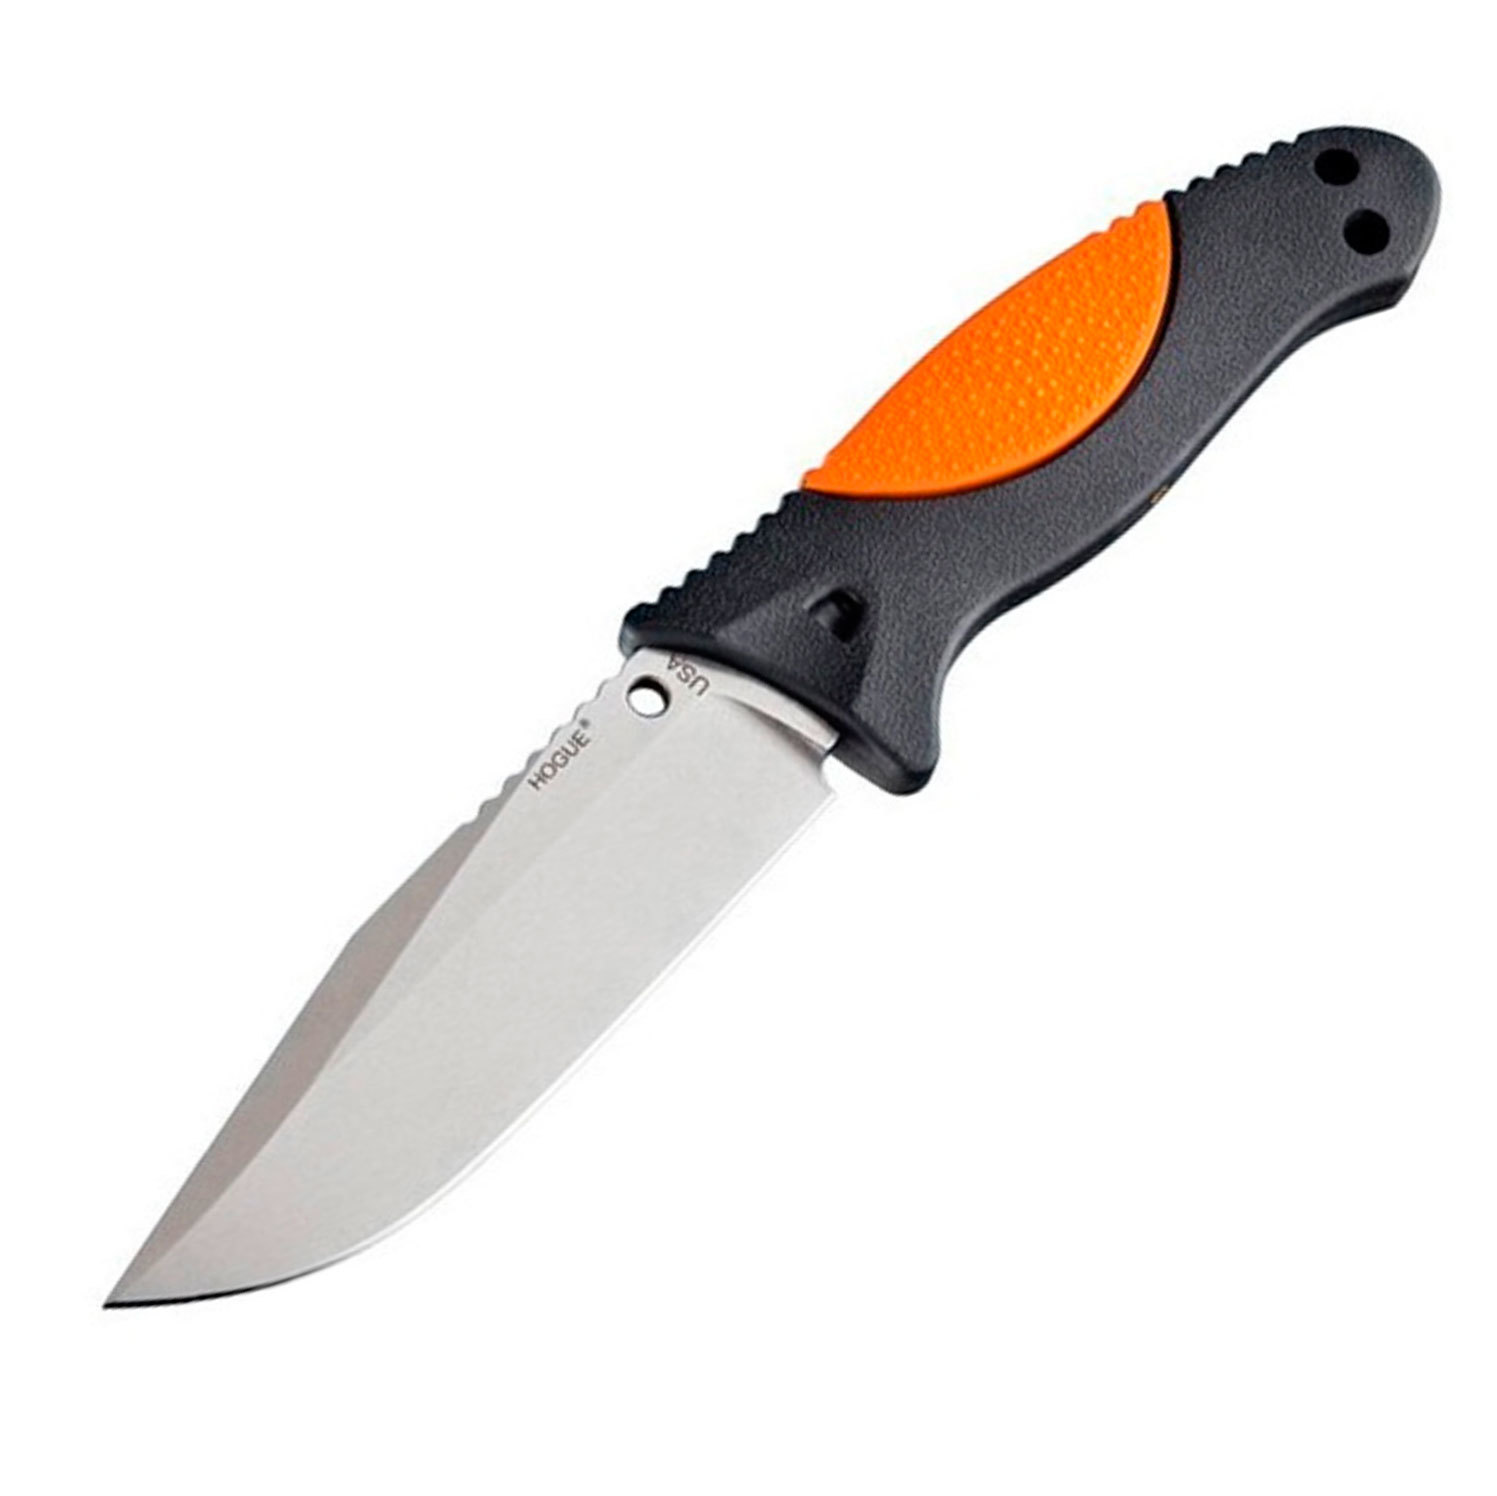 Нож с фиксированным клинком Hogue EX-F02 Stone-Tumbled Clip Point, сталь A2 Tool Steel, рукоять термопластик GRN, чёрно-оранжевый